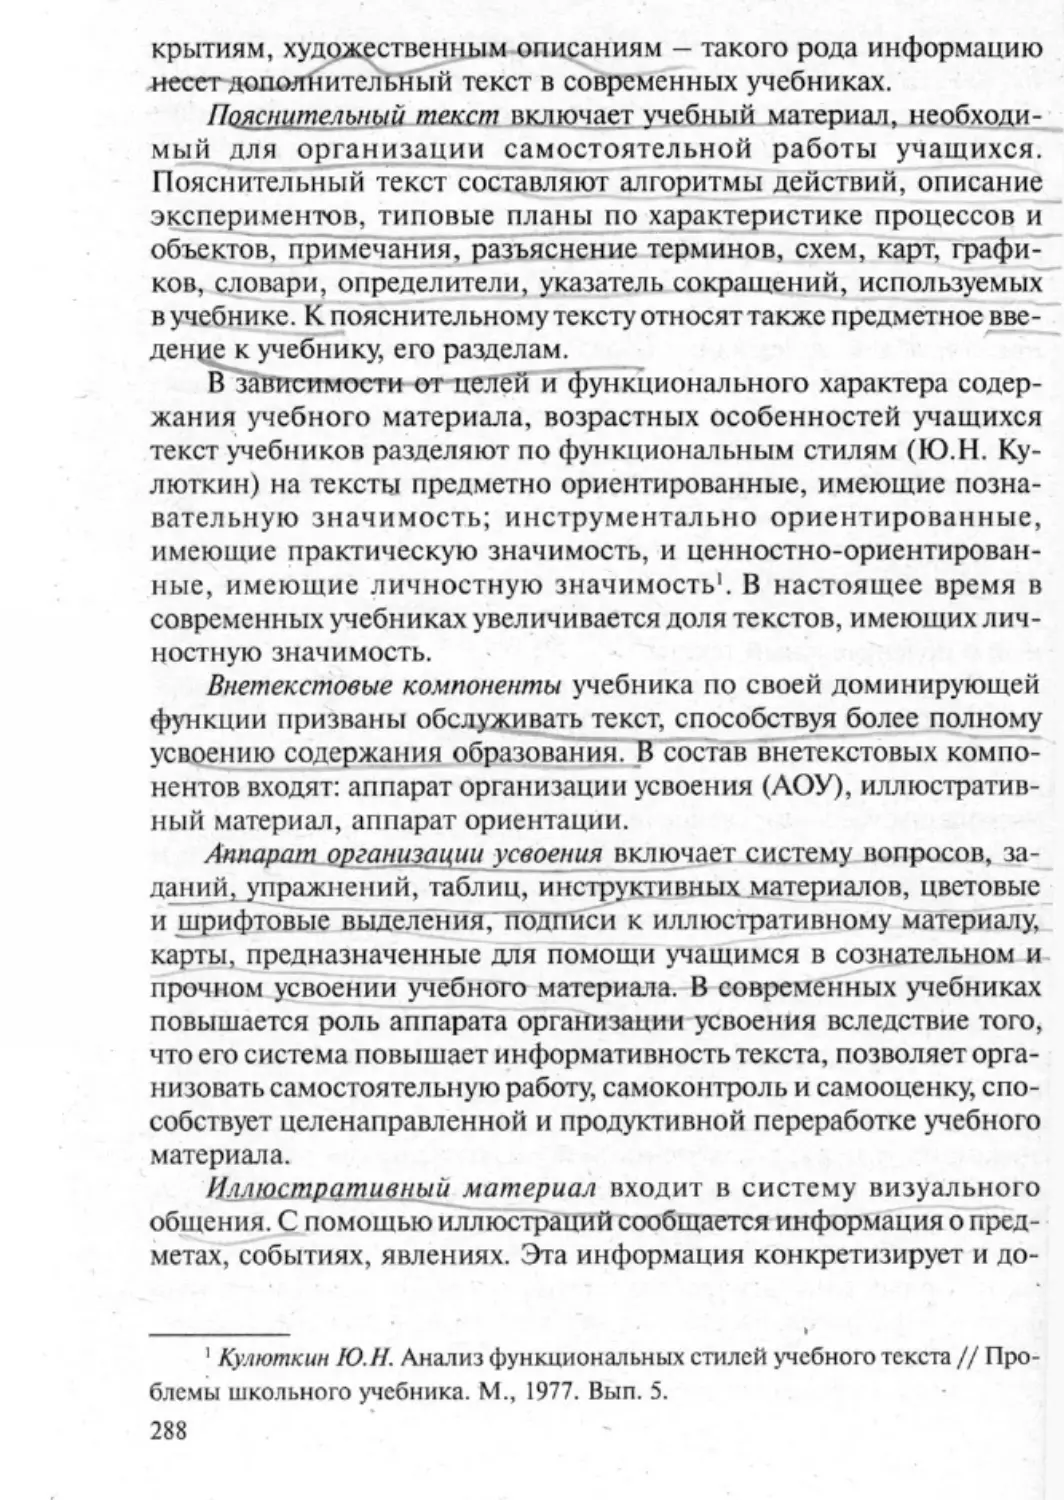 Загрекова Л.В., Николаева В.В - 0289